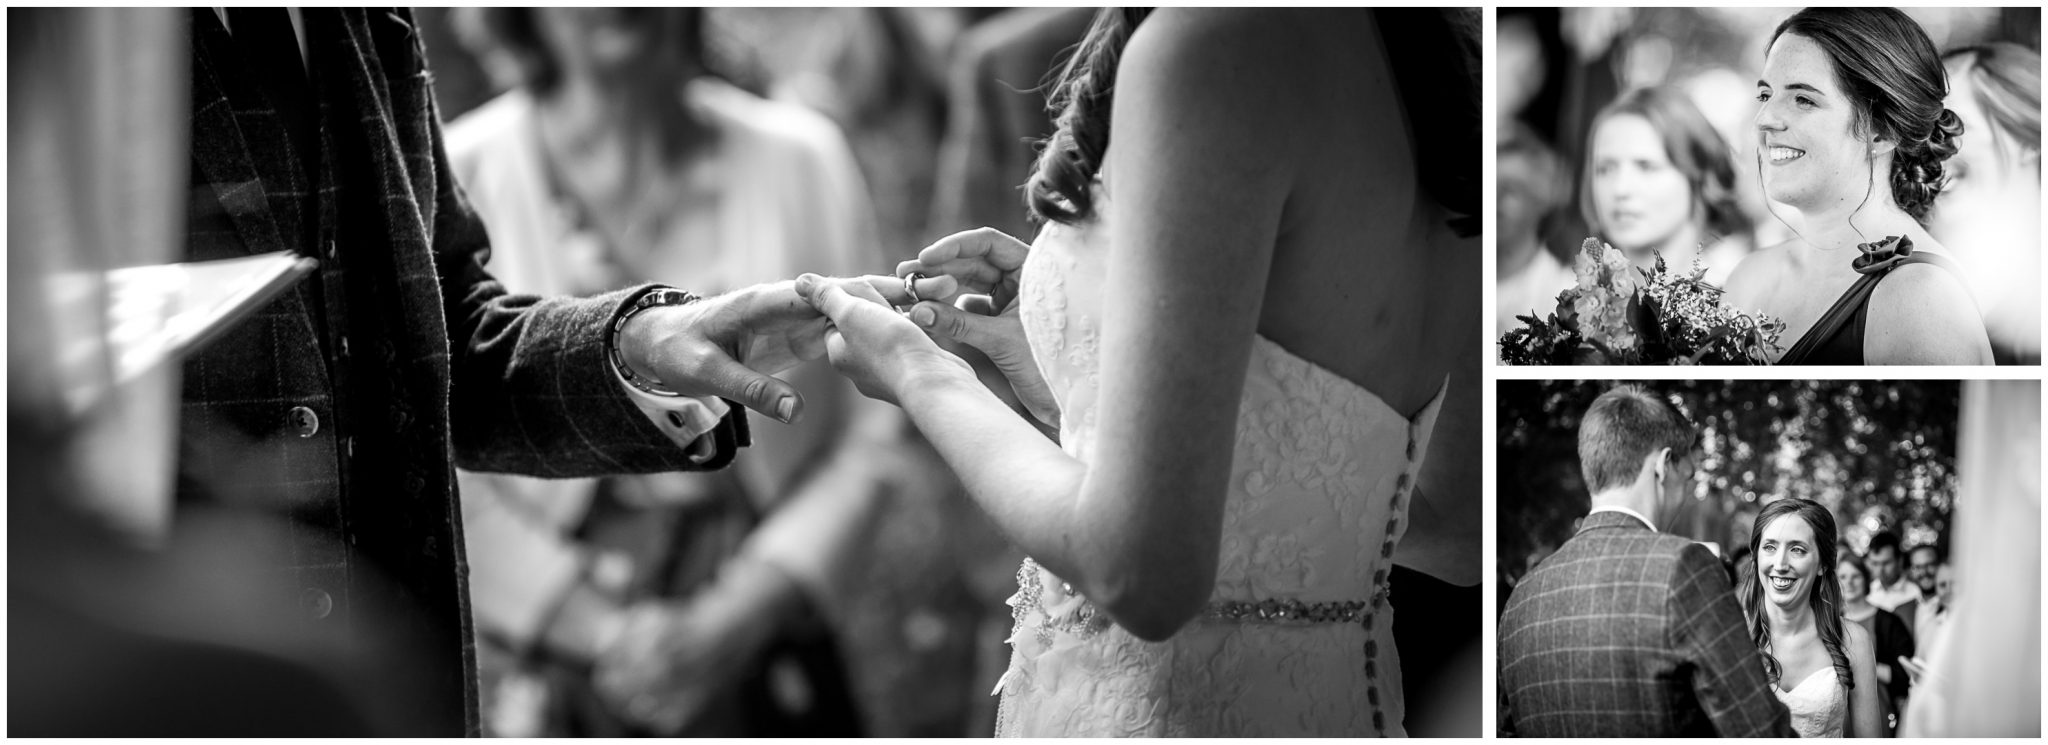 Timsbury Manor Festival Wedding exchange of rings between bride and groom